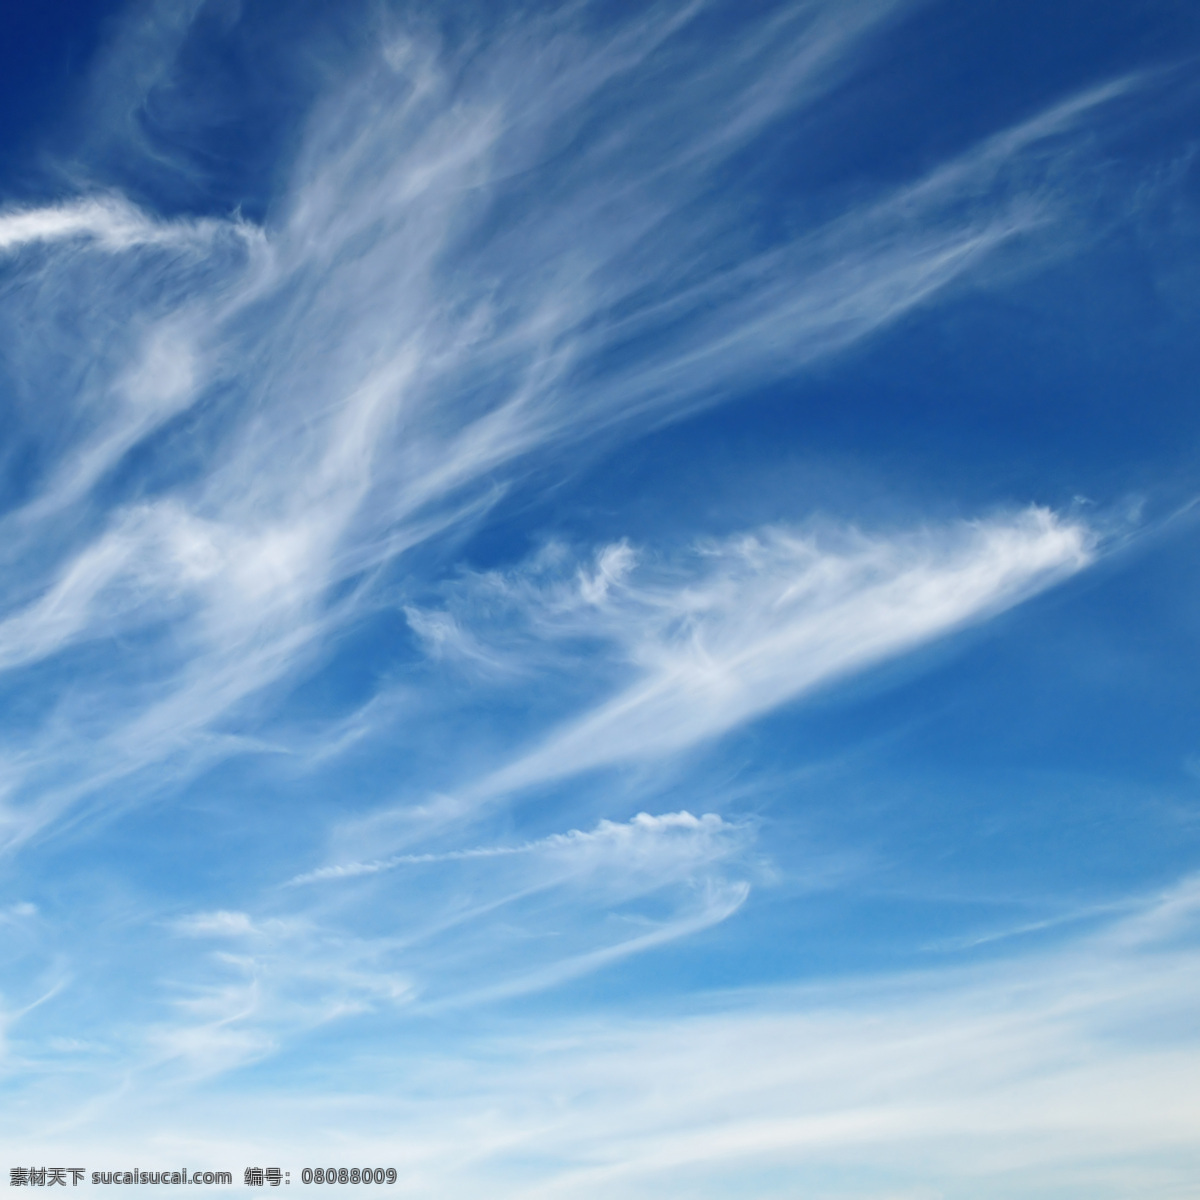 高清 天空 白云 高清图片 蓝天 晴空 云彩 云朵 颜颜丶一个人